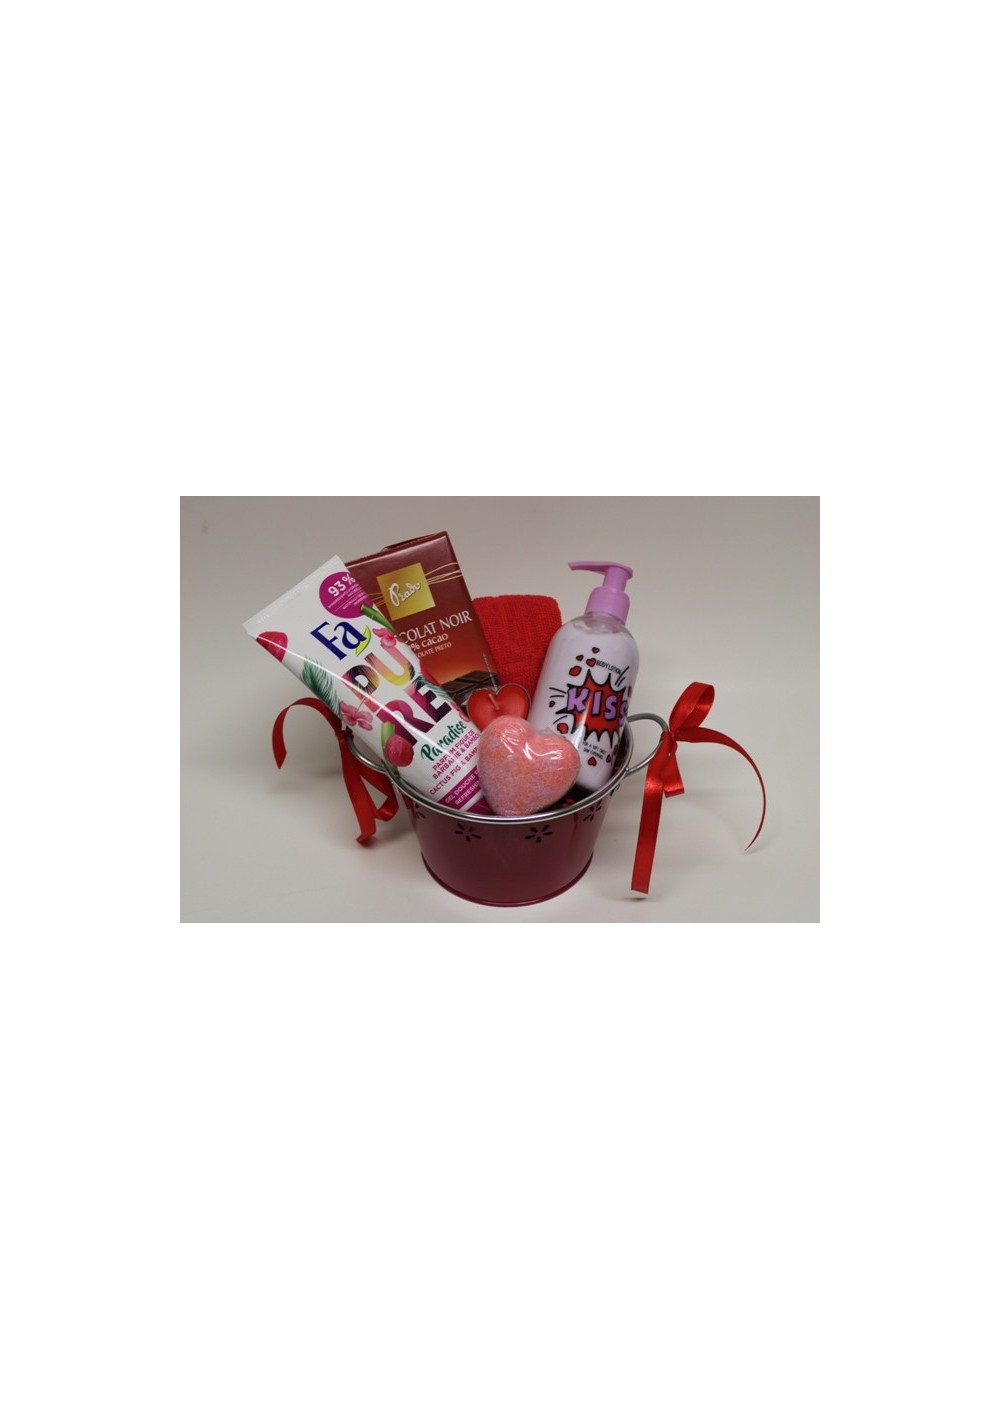 Valentine's Day Surprise - Gift basket